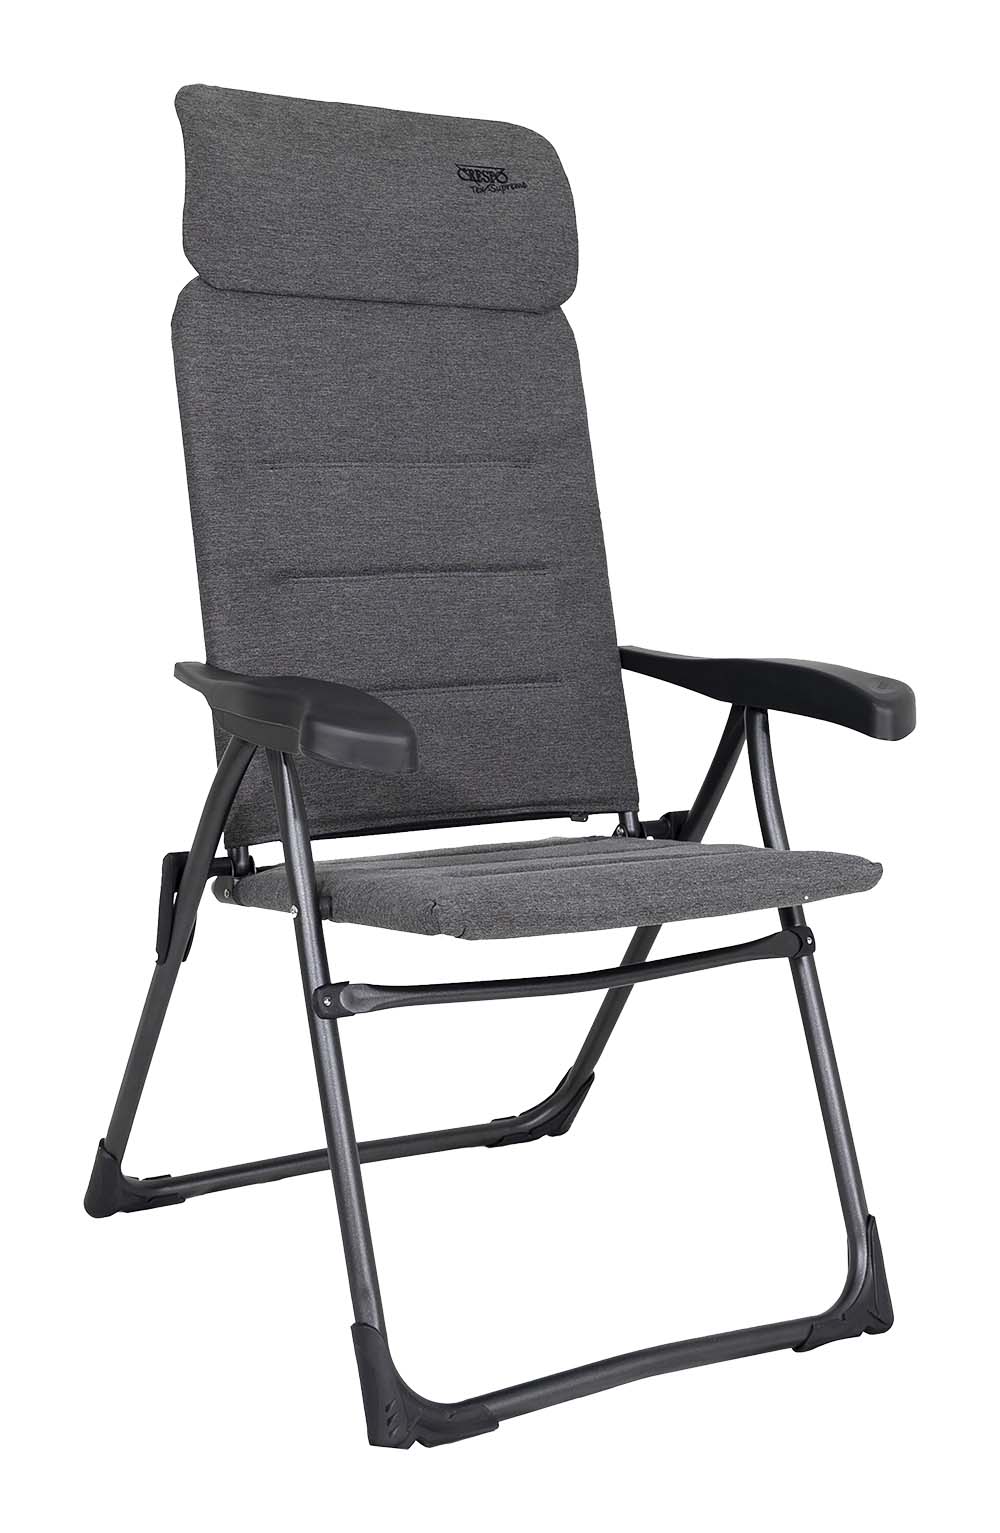 1148010 Een extreem compacte standenstoel. De stoel is zeer plat opvouwbaar, slechts 5 cm dik. Daarom wordt deze stoel ook wel gezien als de meest platte kampeerstoel. Deze stoel biedt maximaal comfort door de in 7 standen verstelbare rugleuning en een traploos verstelbare hoofdsteun. Deze stoel is voorzien van een Tex-Comfort stof. Deze comfortabele stof is zeer onderhoudsvriendelijk, bestand tegen verkleuring door de zon en waterafstotend. Hierdoor is de stoel veel sneller droog dan stoelen met een traditionele schuimvulling. Daarnaast loopt deze stof volledig om het frame heen. Deze luxe stof wordt aan de achterkant van de zittingsbuis heen geslagen en aan de voorzijde loopt de stof door naar de onderzijde, waardoor een zeer aangename zit is gecreëerd. De stoel is voorzien van een U-frame met stabilisatoren en extra dikke buizen voor extra stevigheid en stabiliteit. Deze stoel is door de inschuifbare hoofdsteun extra compact op te bergen. Tot 50% minder pakvolume in vergelijking met andere kampeerstoelen! De stoel is van hoogstaande kwaliteit met TÜV Keurmerk.